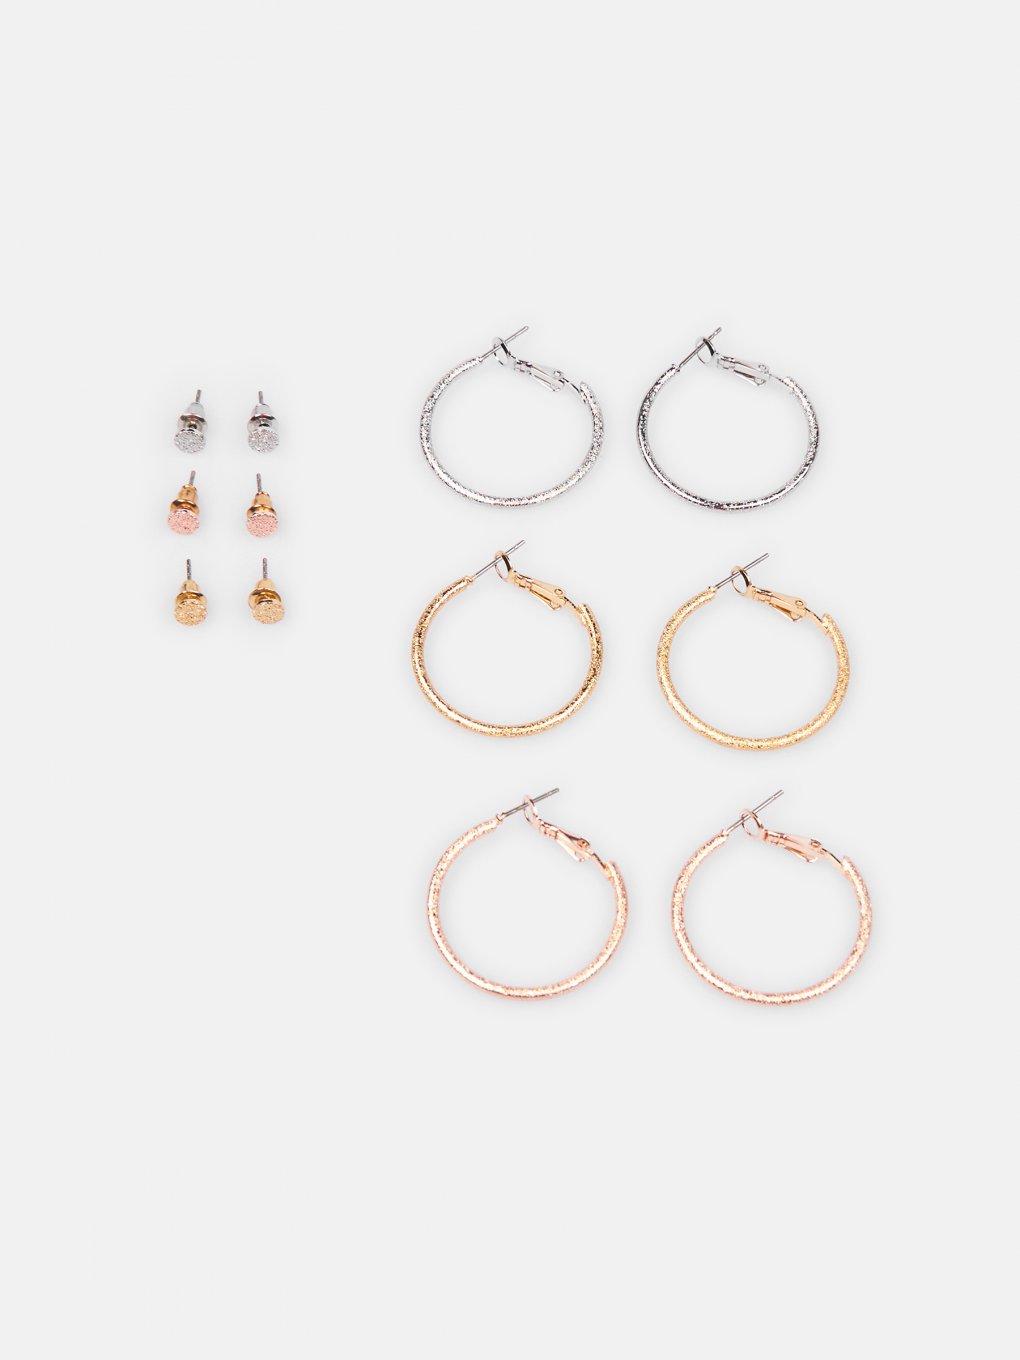 6 pairs of earrings